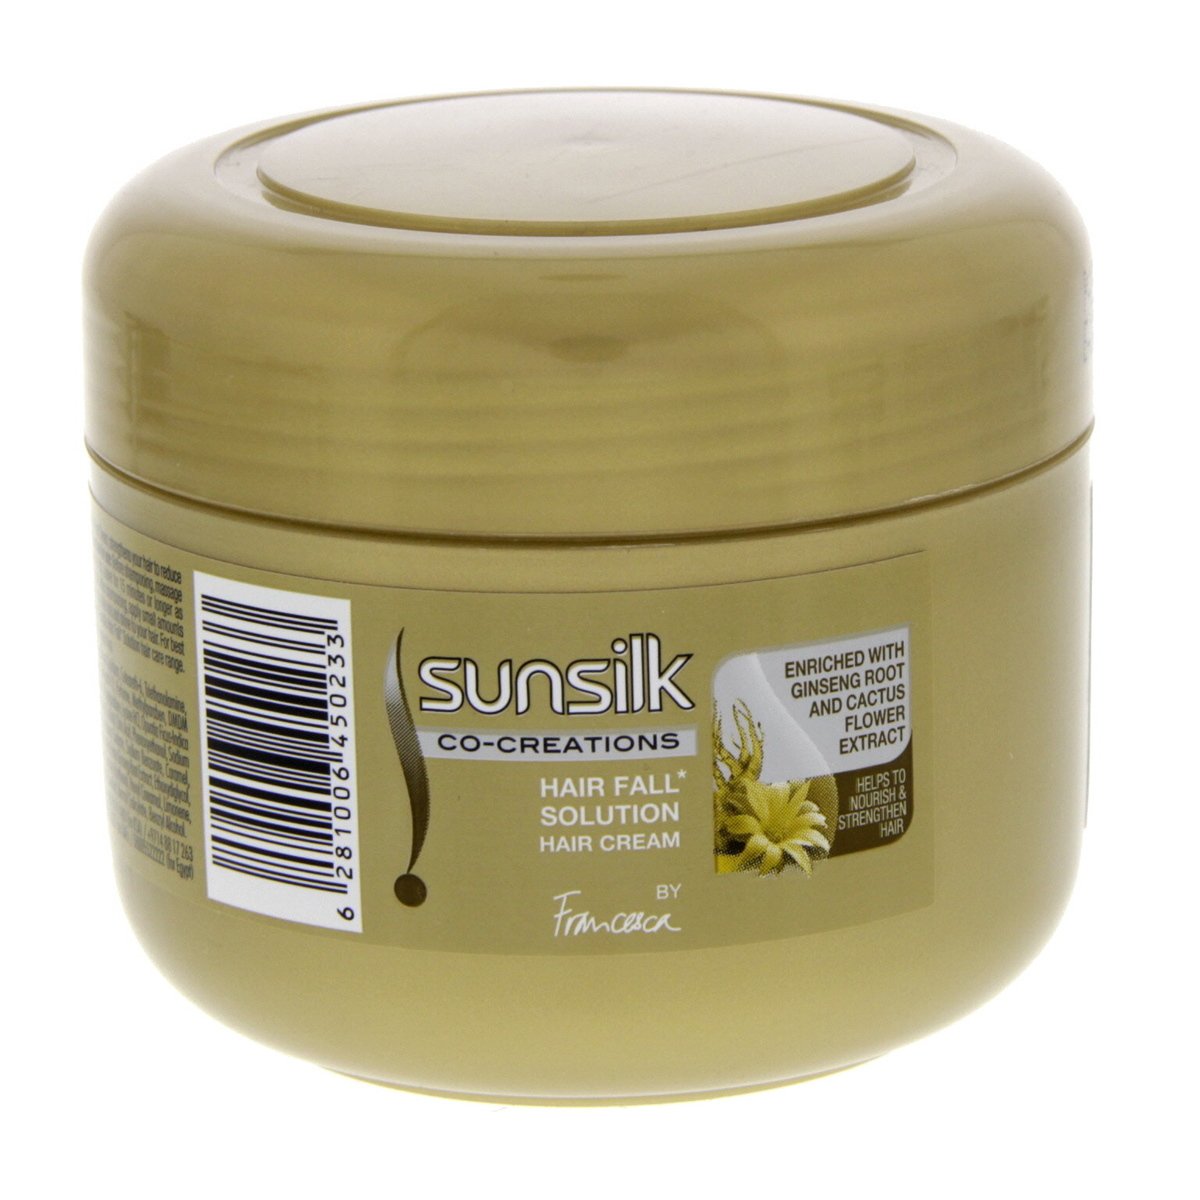 Sunsilk Hair Fall Solution Hair Cream 175 ml